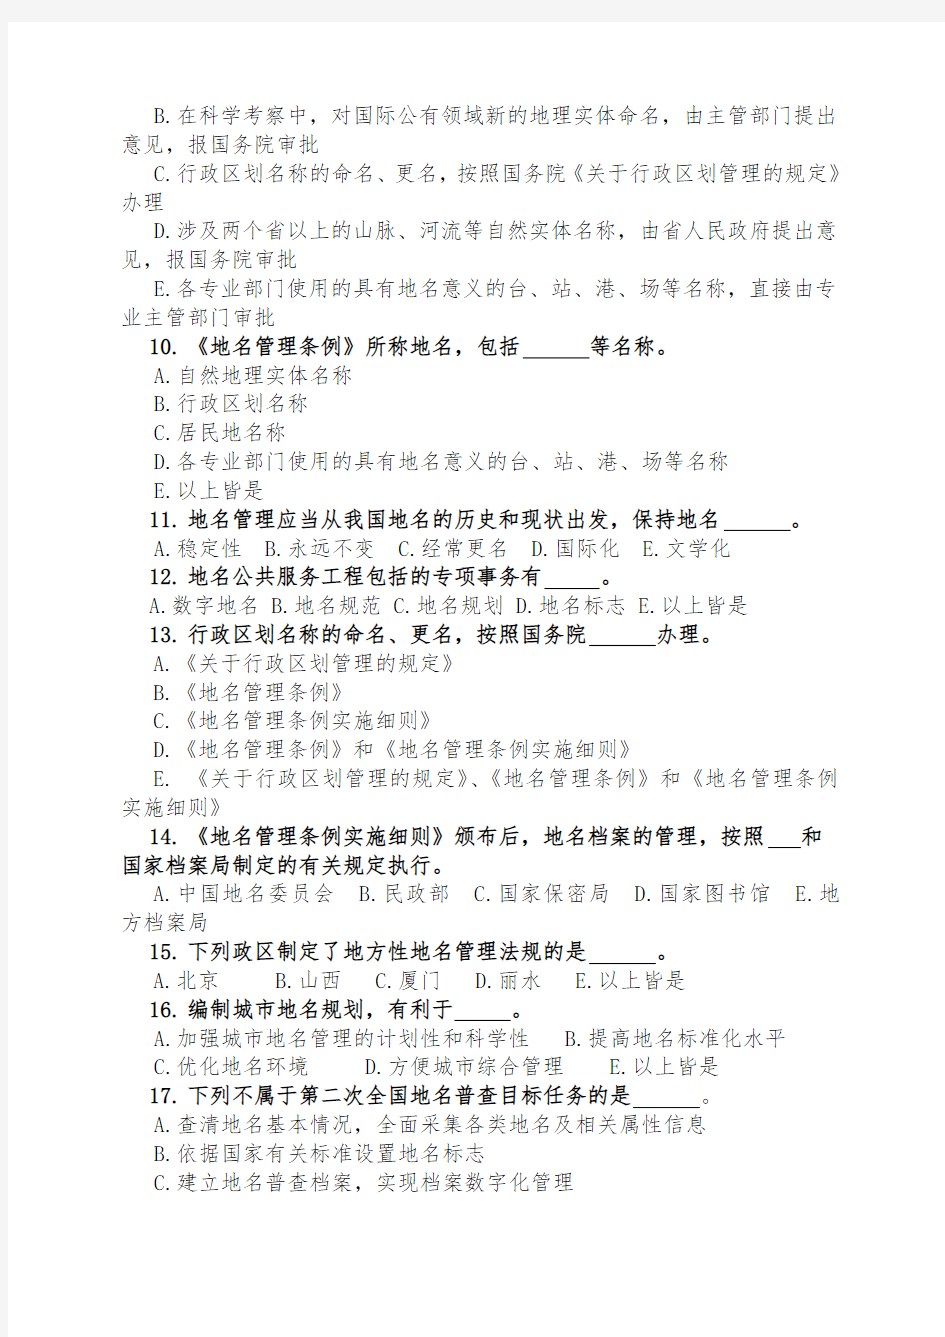 地名知识竞答试题100道-中华人民共和国民政部